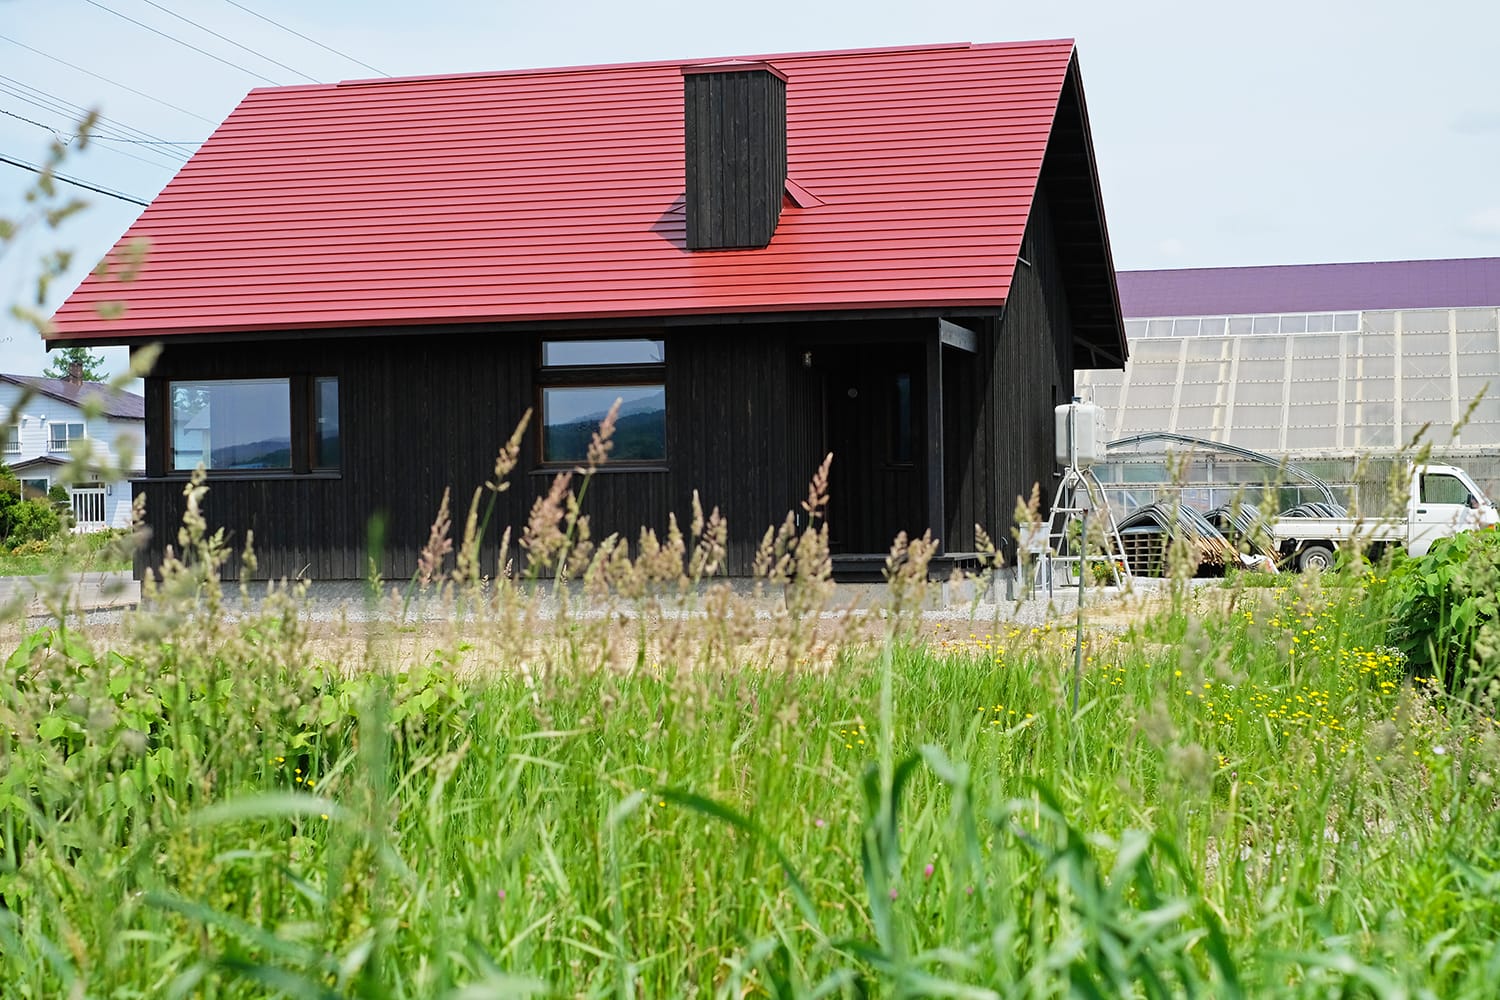 赤い板金屋根と黒い縦板張り外壁の家